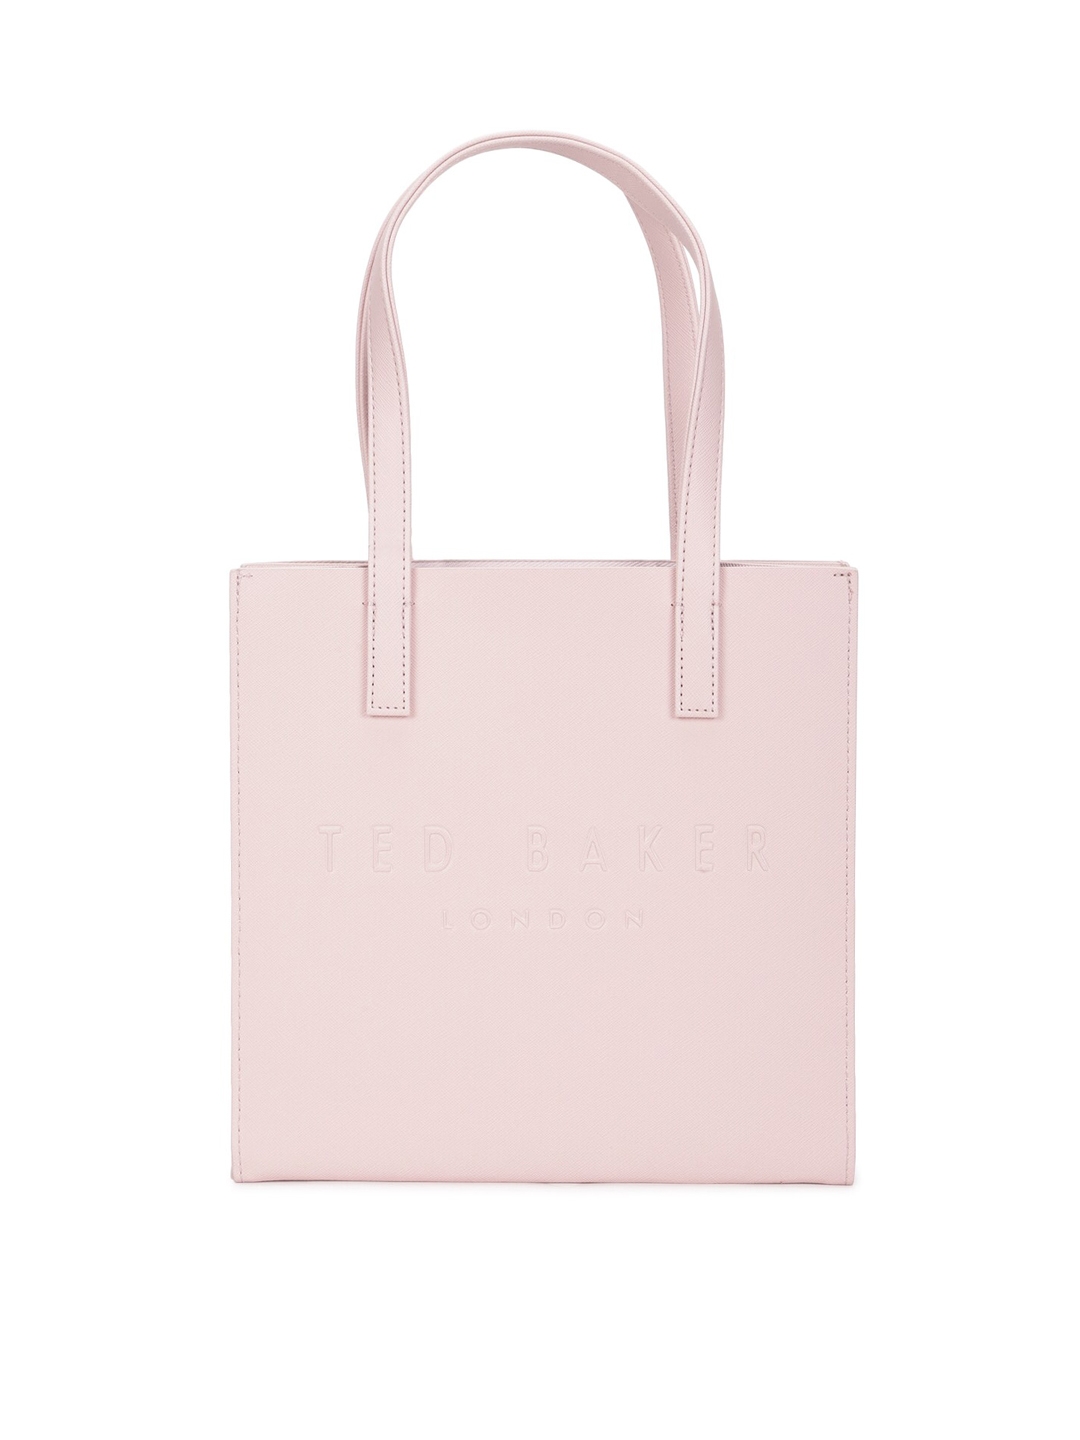 Ted Baker Women Pink Textured Leather Shoulder Bag